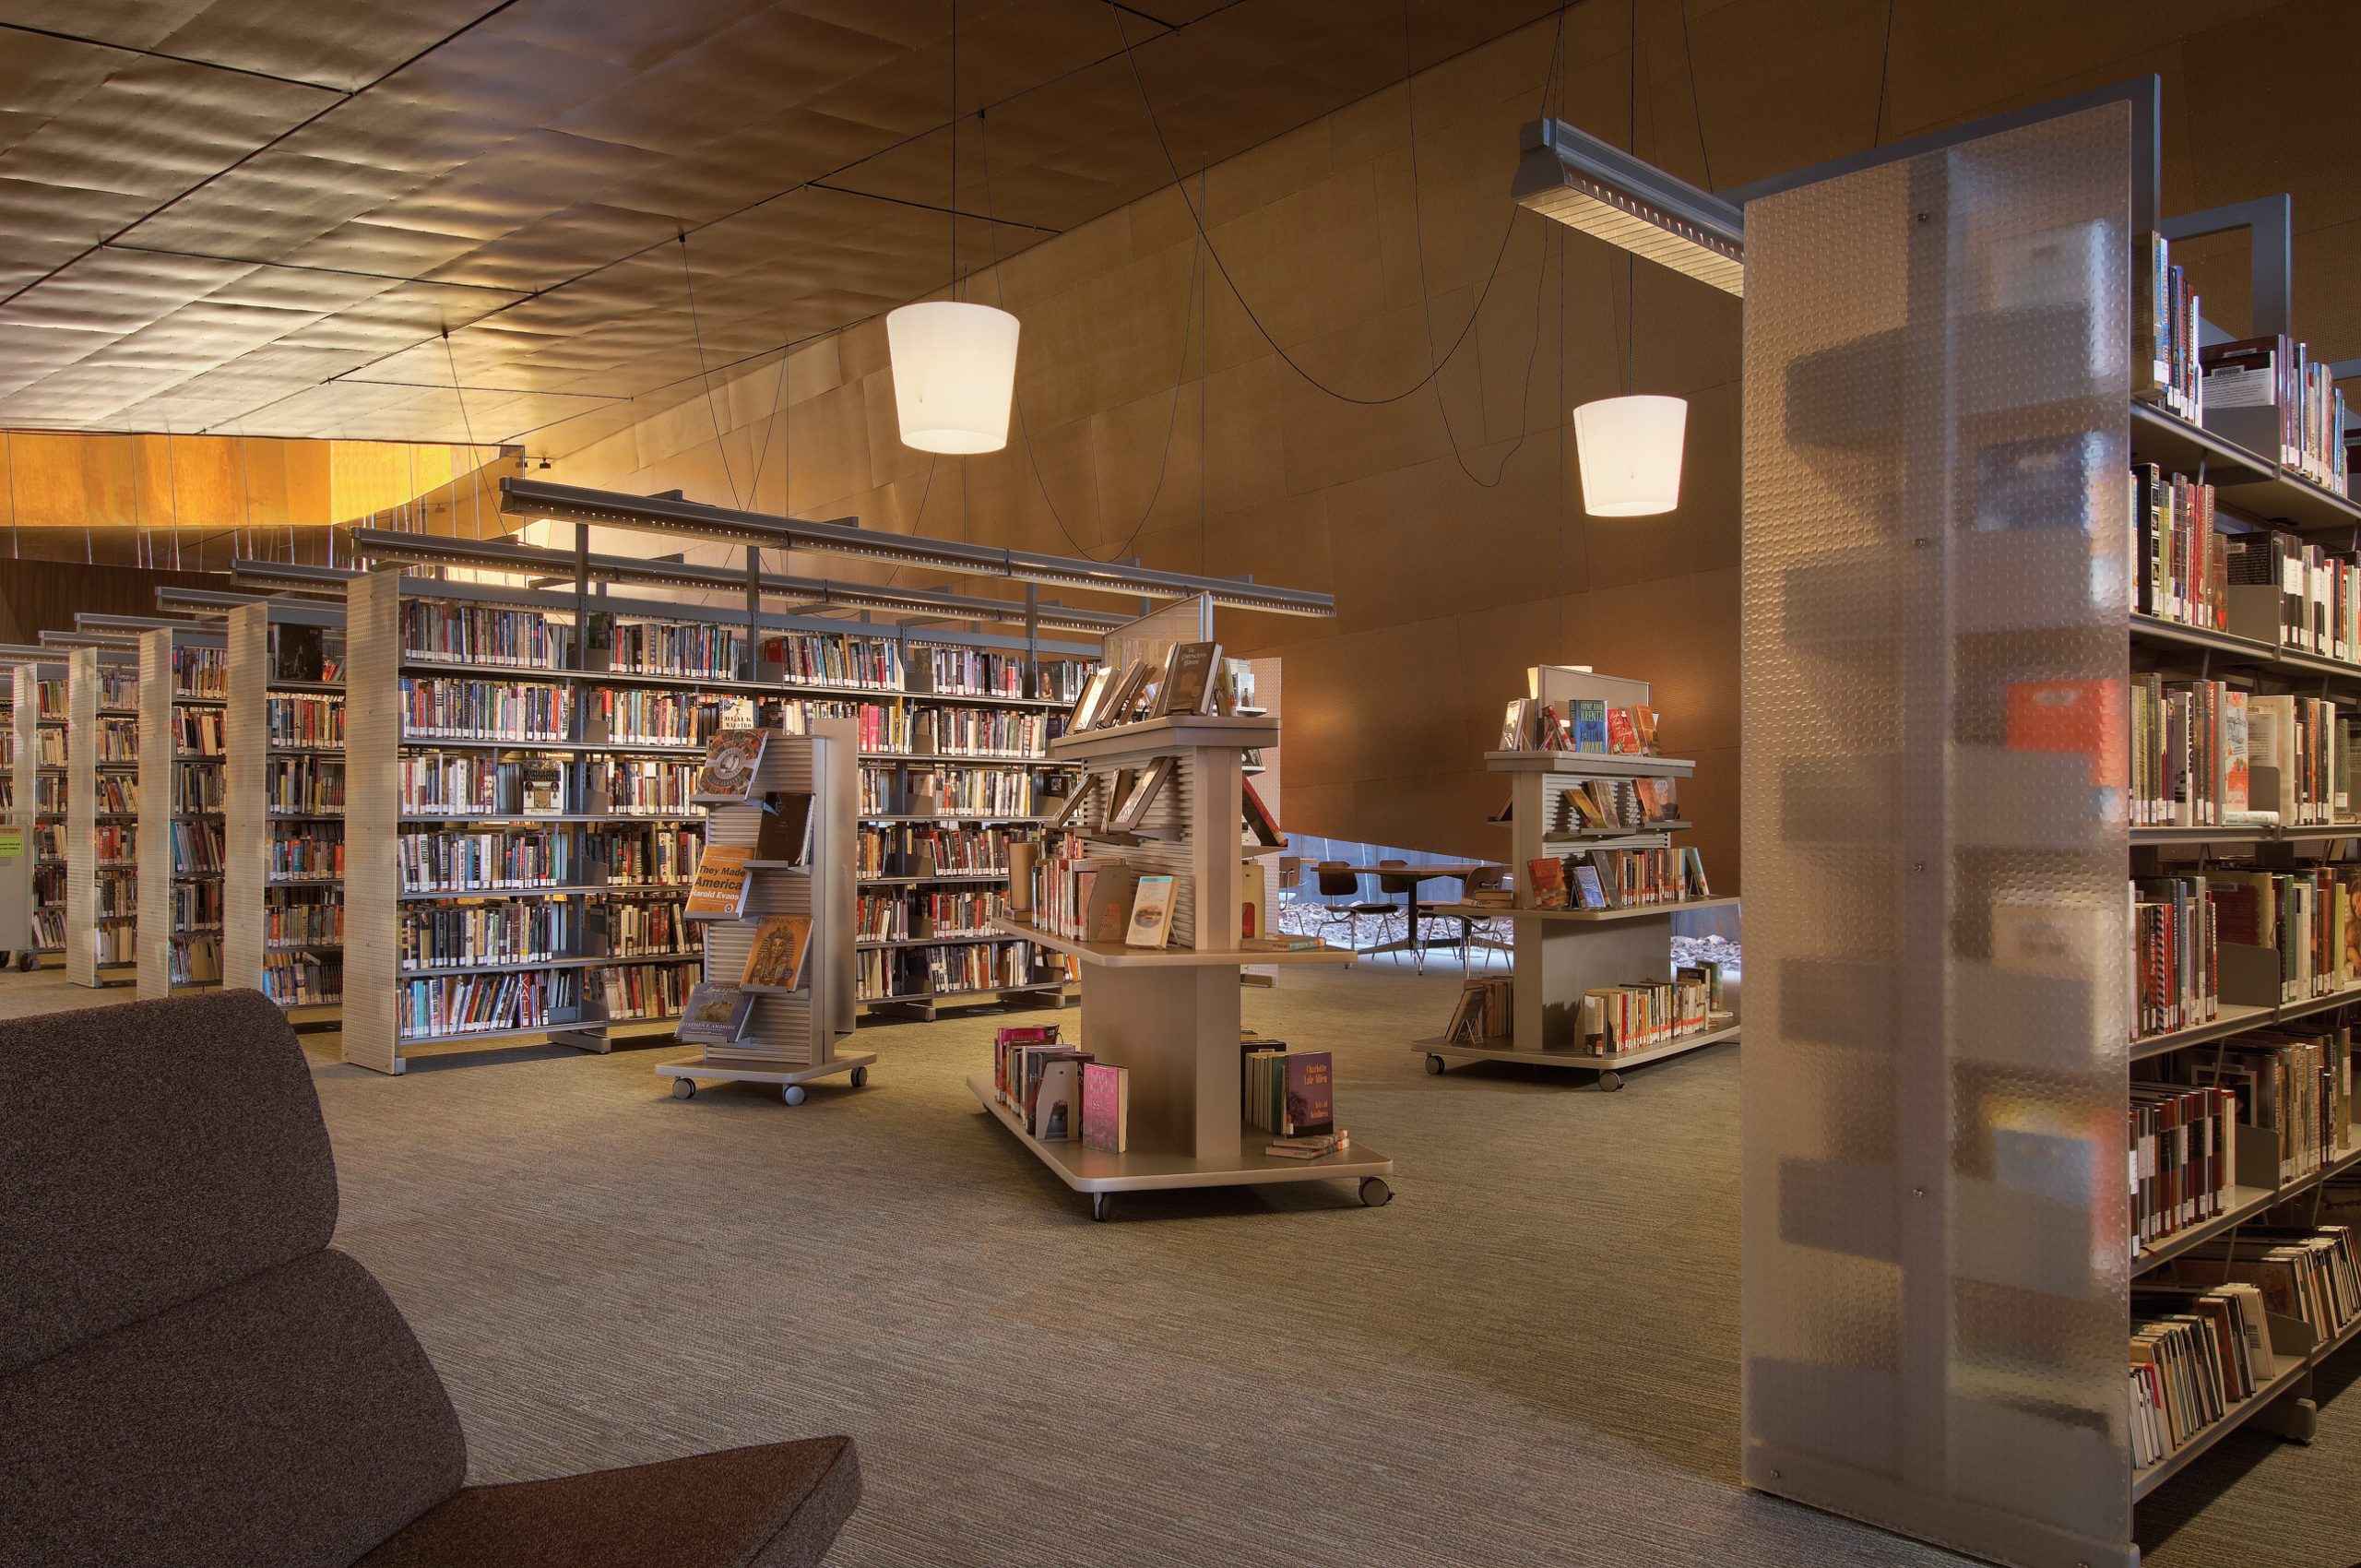 Arabian Public Library